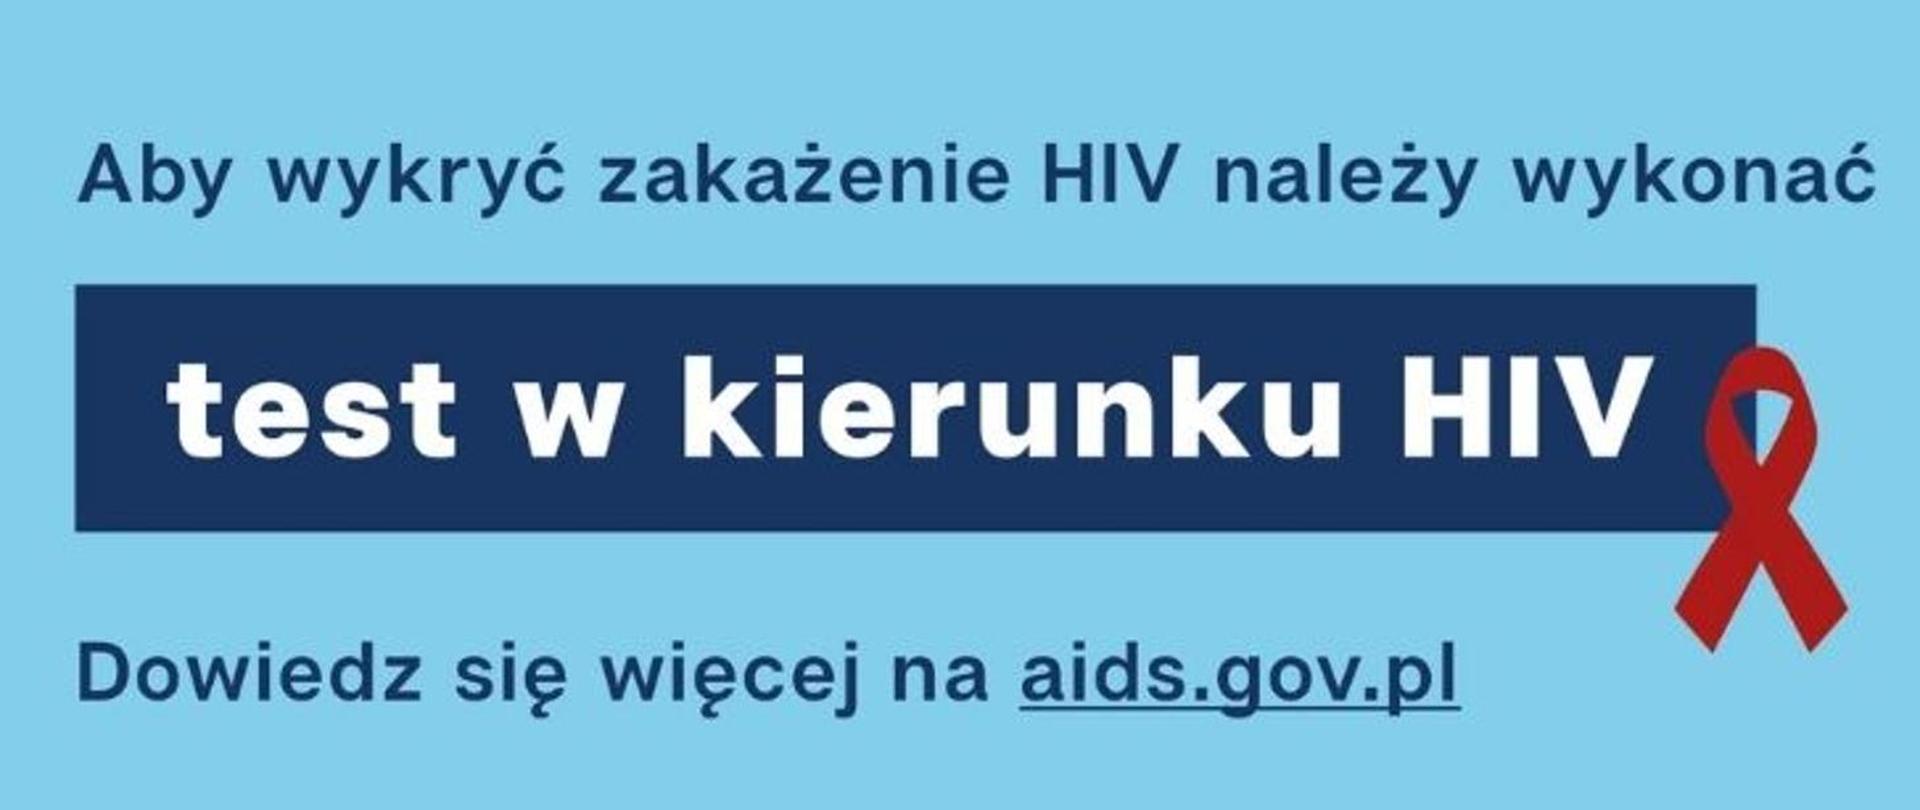 Test w kierunku HIV